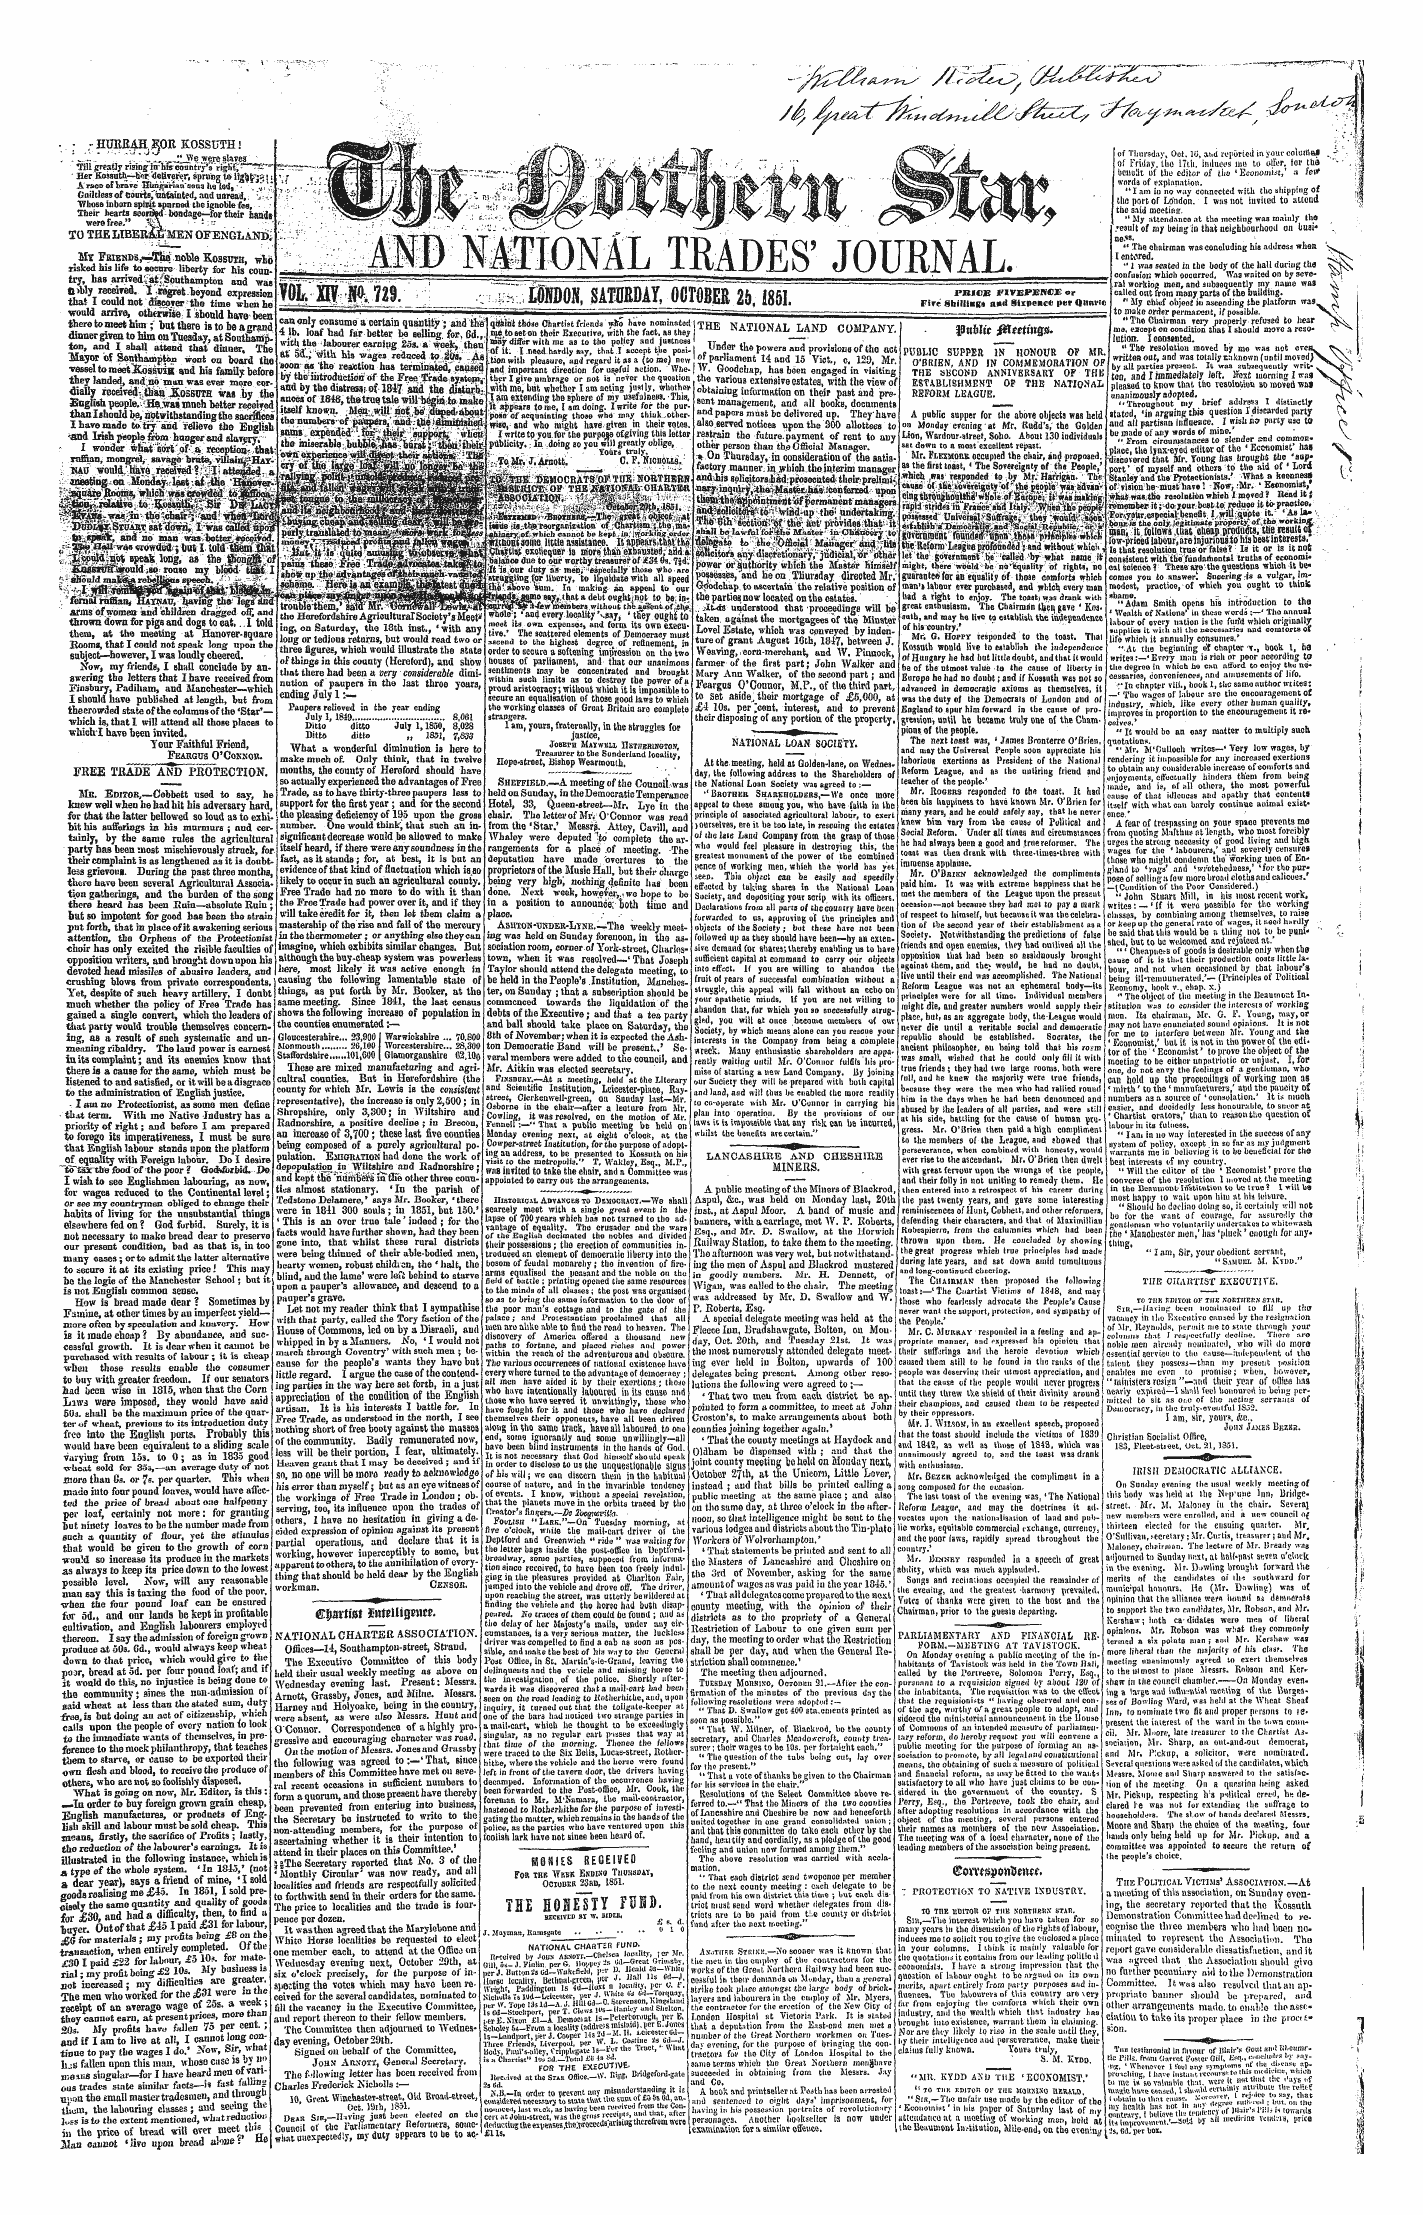 Northern Star (1837-1852): jS F Y, 1st edition - Comoj)O»Dw».